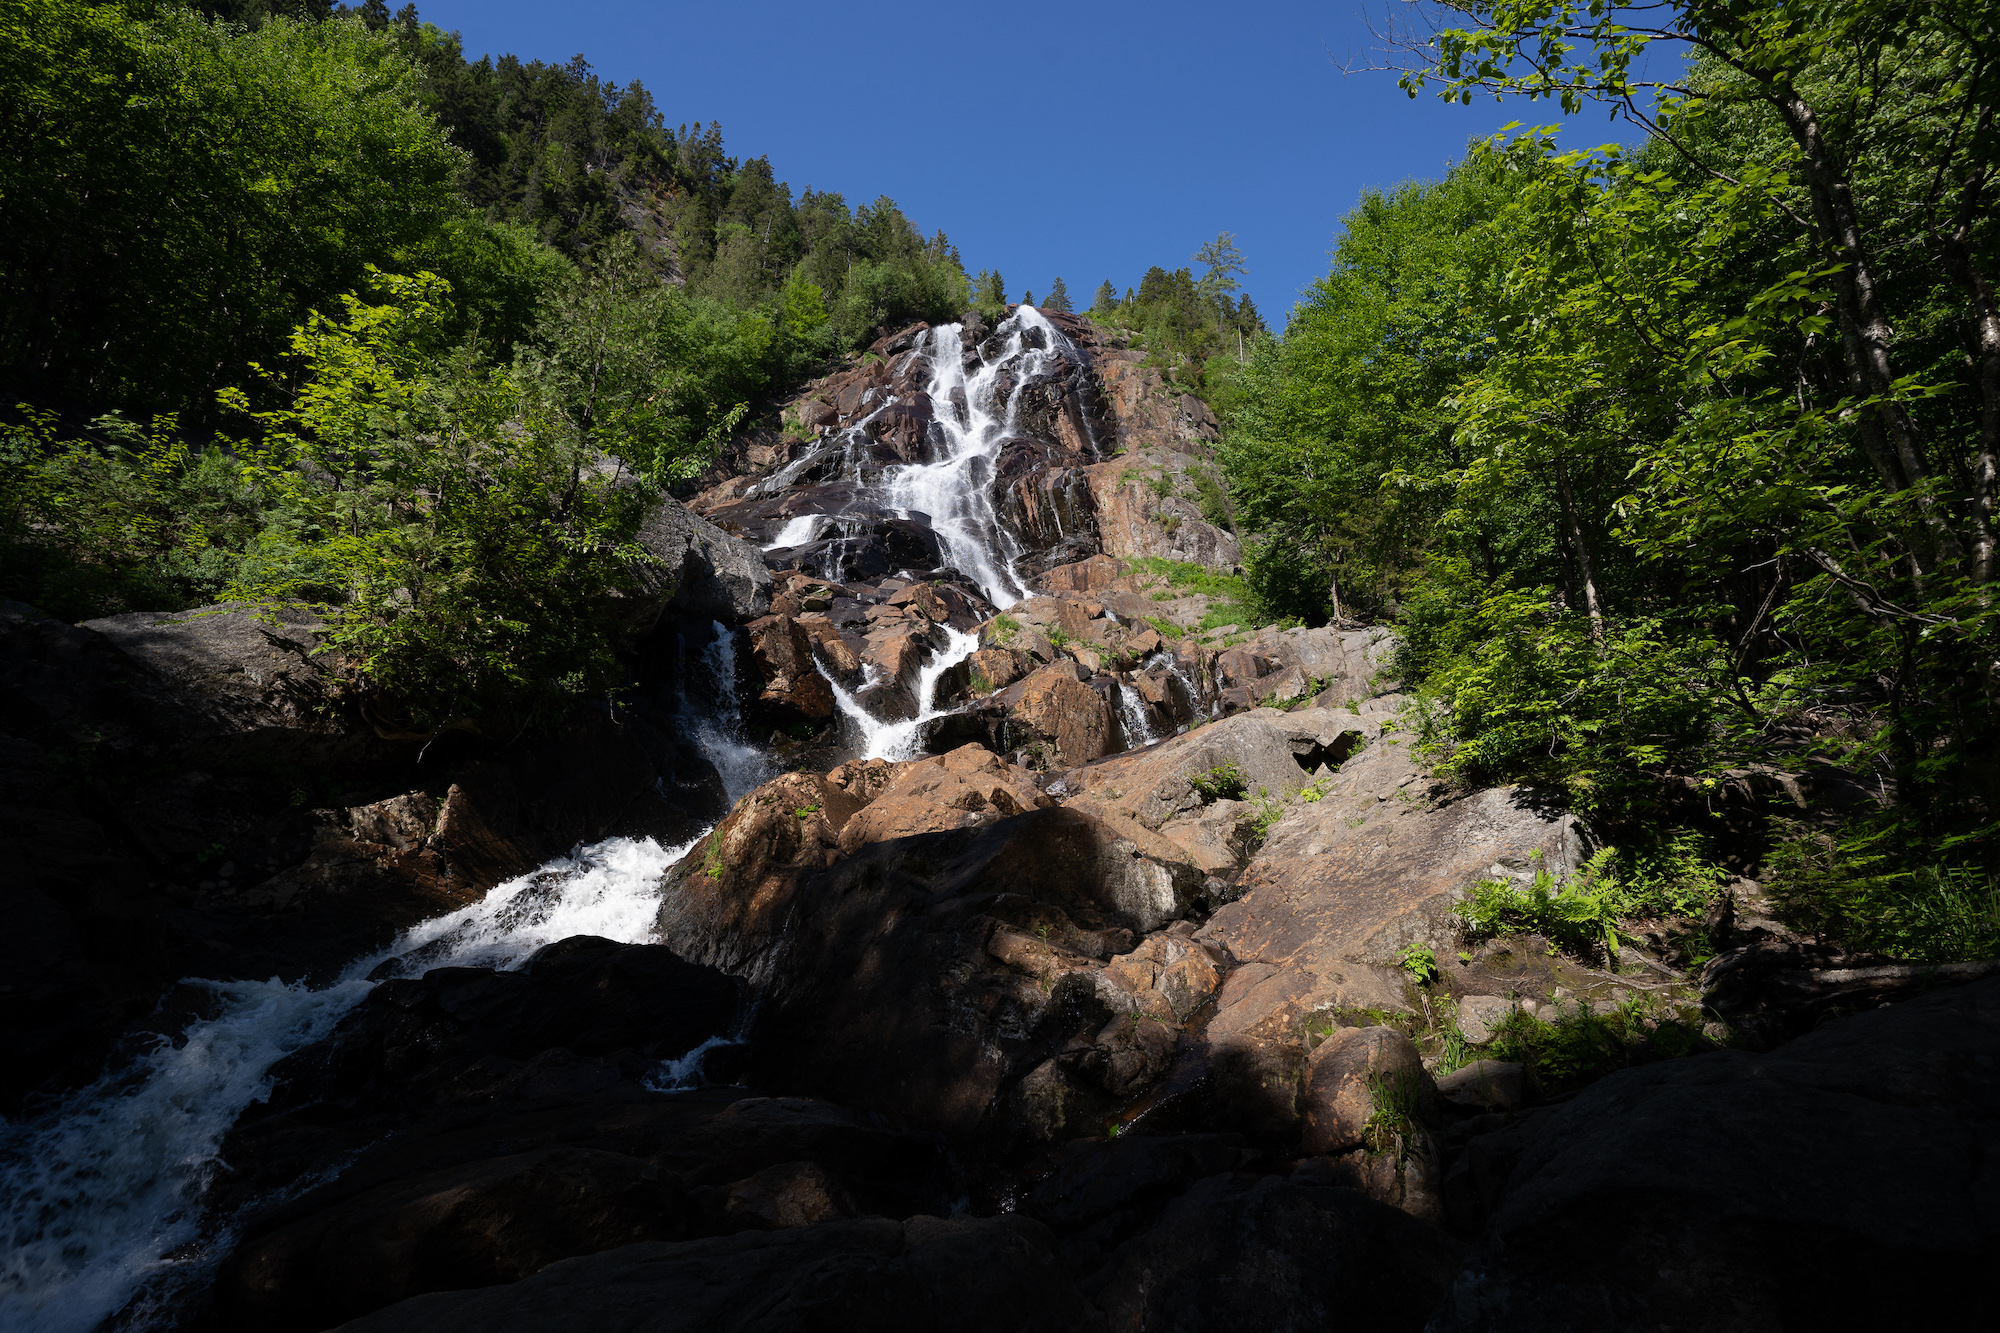 Photo de la Chute Delaney, chute sur rochers entourée d'arbres et de la nature verdoyante offerte par la Vallée et visible via les sentiers de randonnée pédestre.